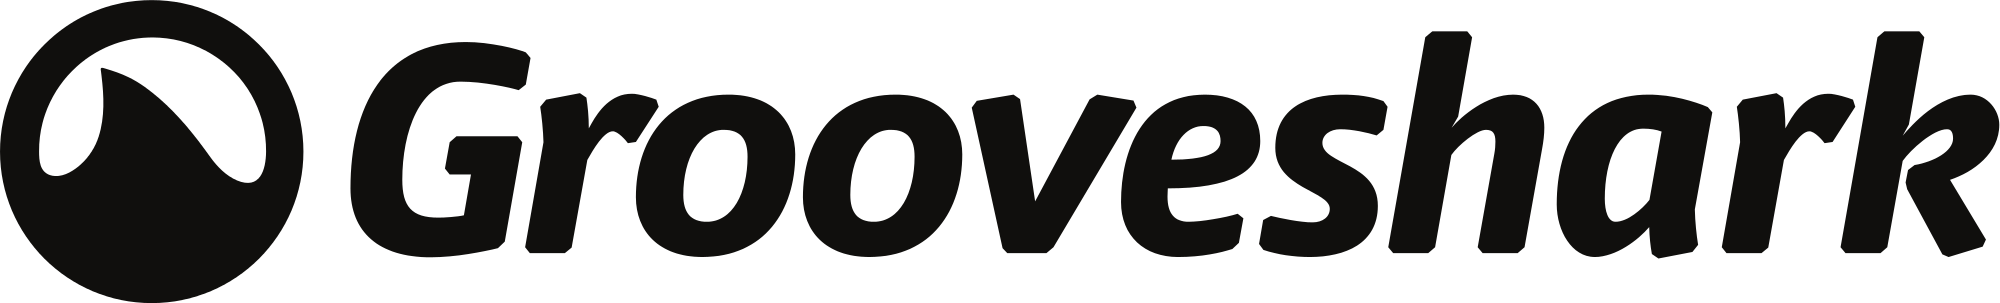 Grooveshark Logo - File:Grooveshark logo horizontal.svg - Wikimedia Commons